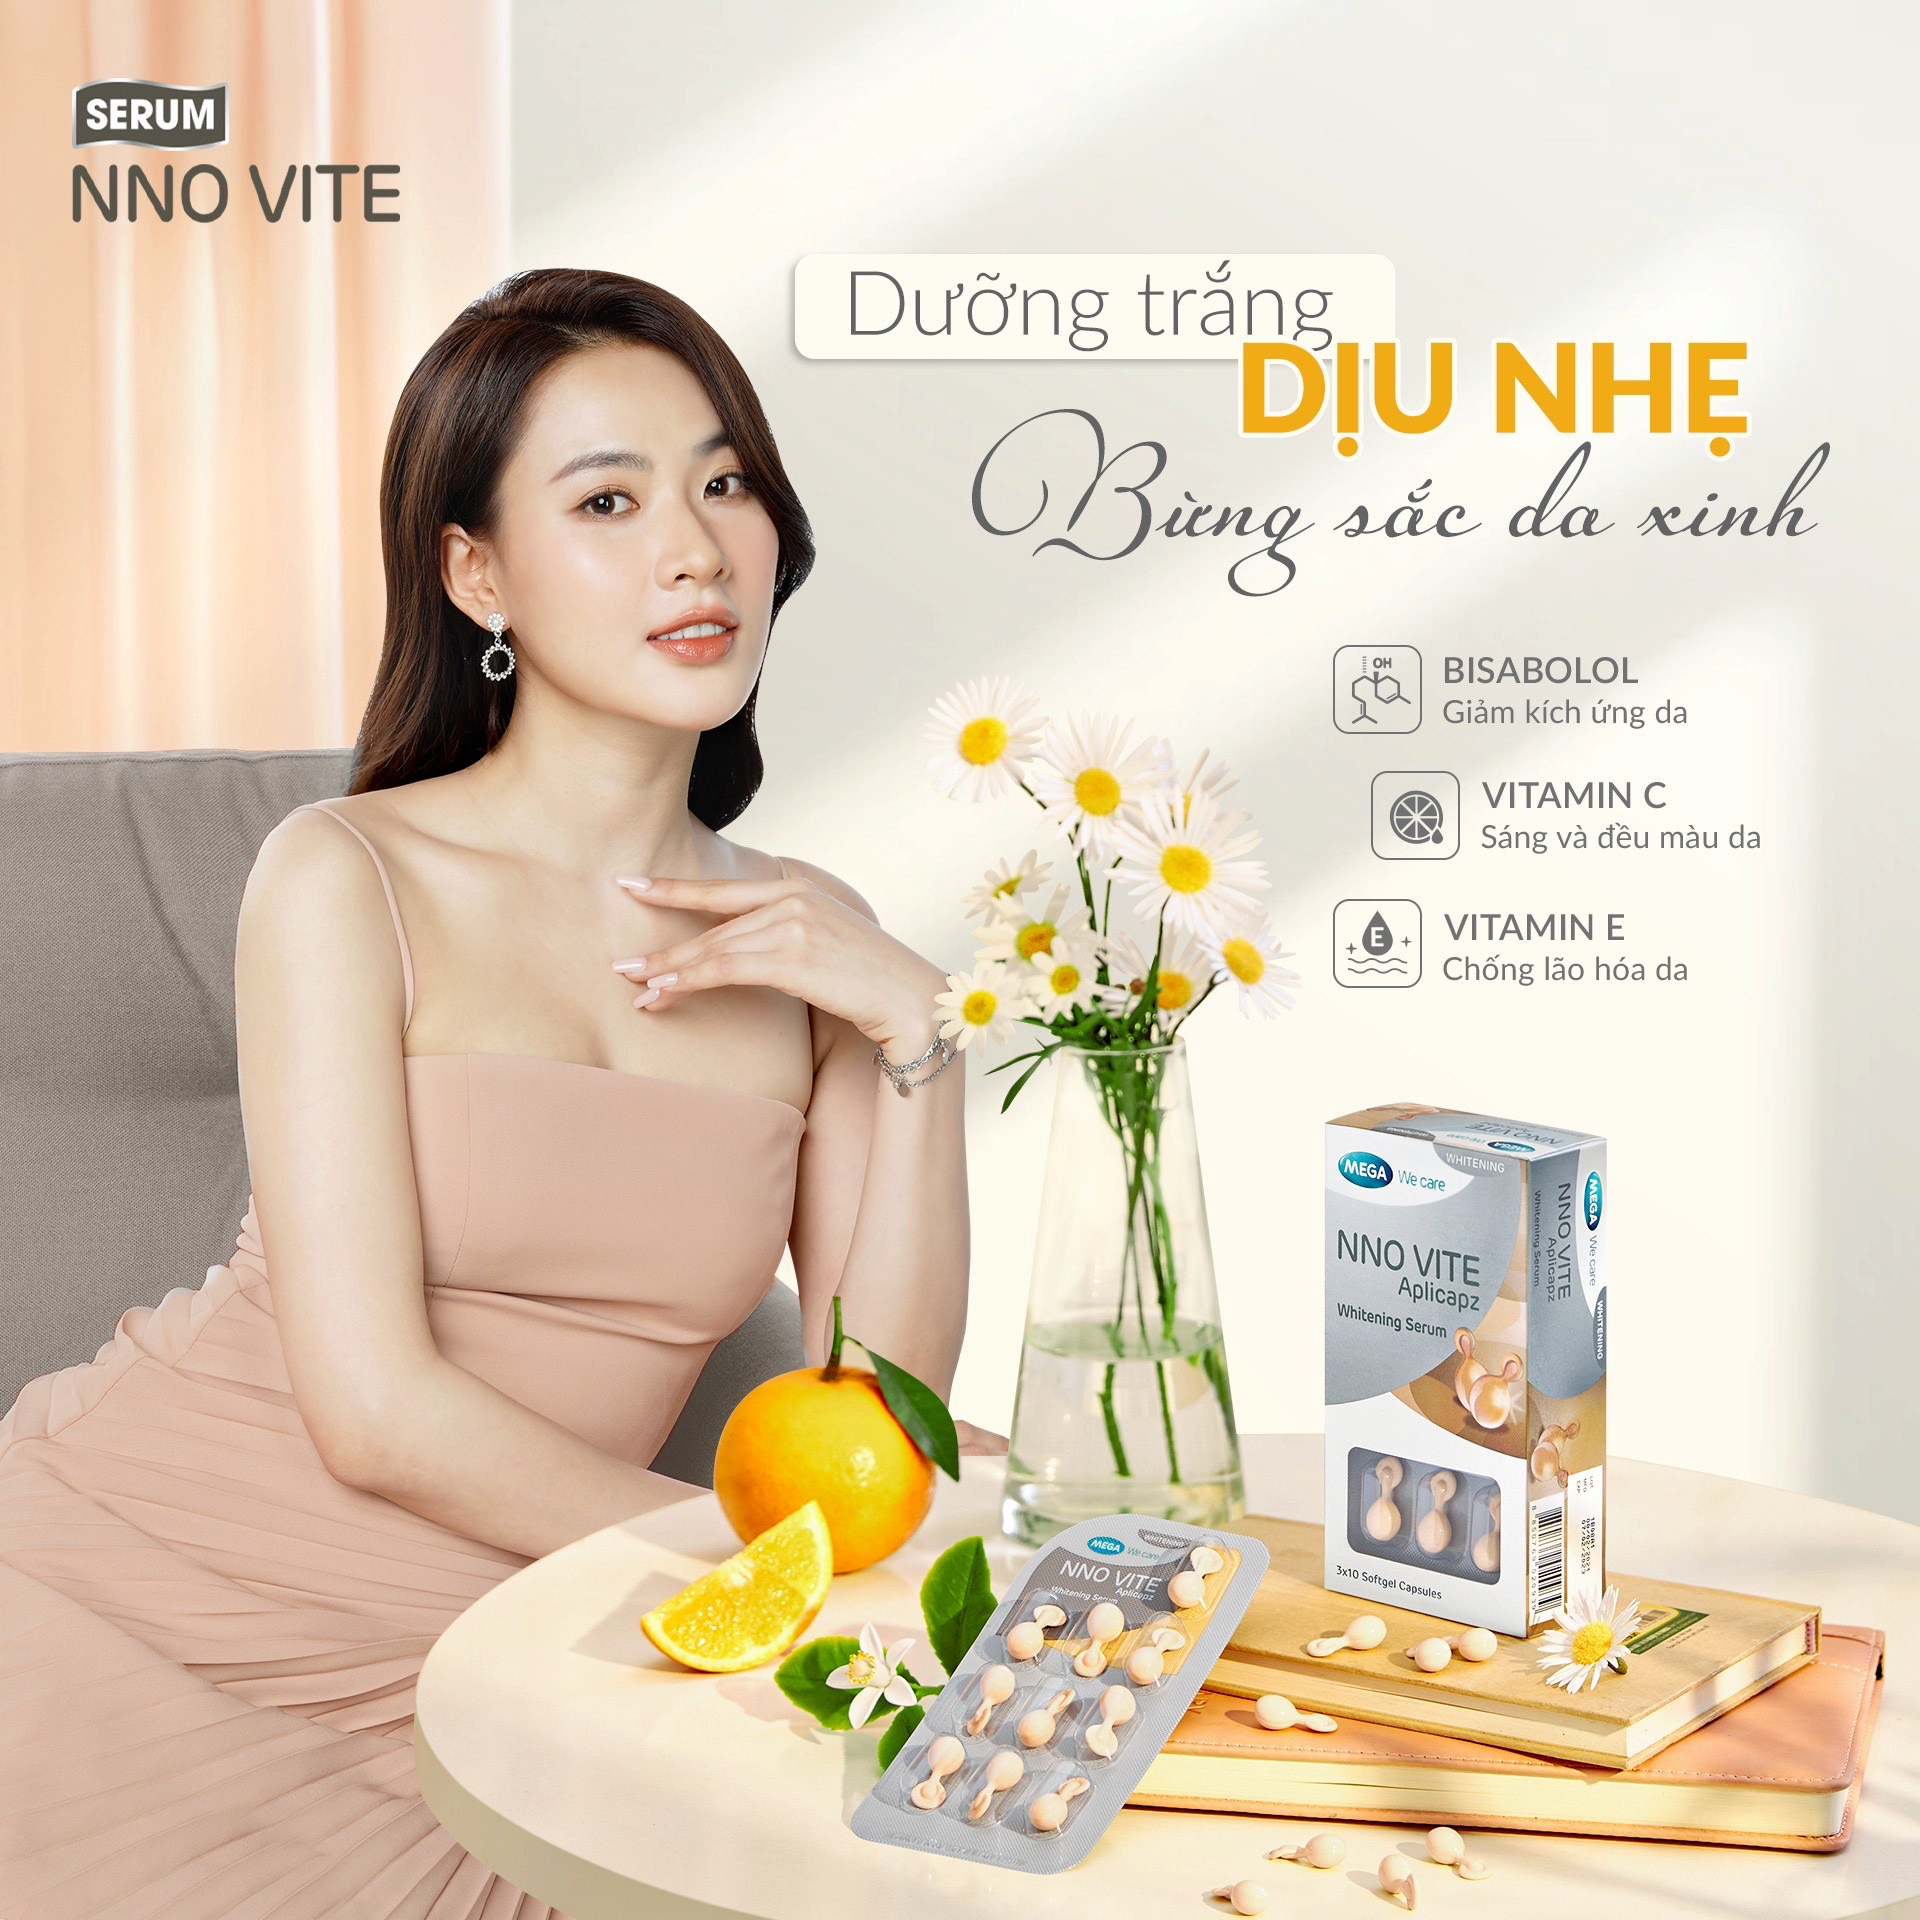 Serum dưỡng trắng da NNO VITE - Bí quyết dưỡng da trắng sáng của nhiều phụ nữ Việt hiện đại